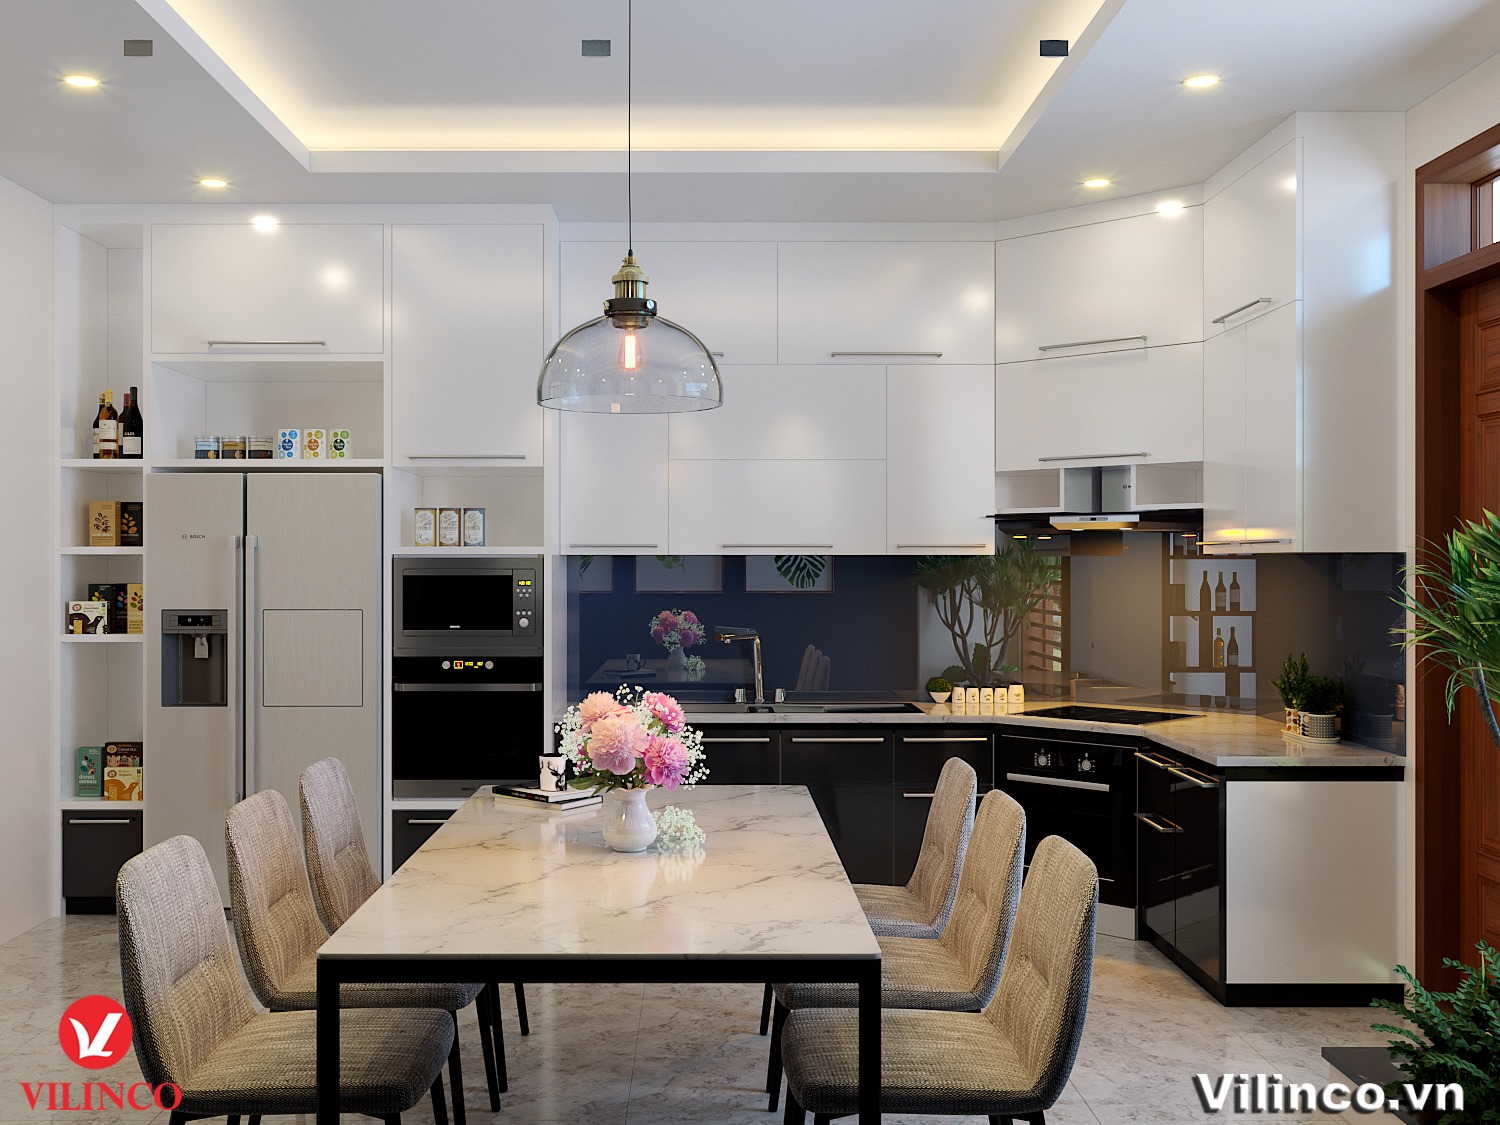 Trần thạch cao trang trí phòng bếp là một lựa chọn thông minh và thẩm mỹ để tăng thêm giá trị cho không gian ẩm thực của gia đình bạn. Tận hưởng không gian đa năng và nổi bật trong căn bếp bằng cách xem ngay hình ảnh liên quan.